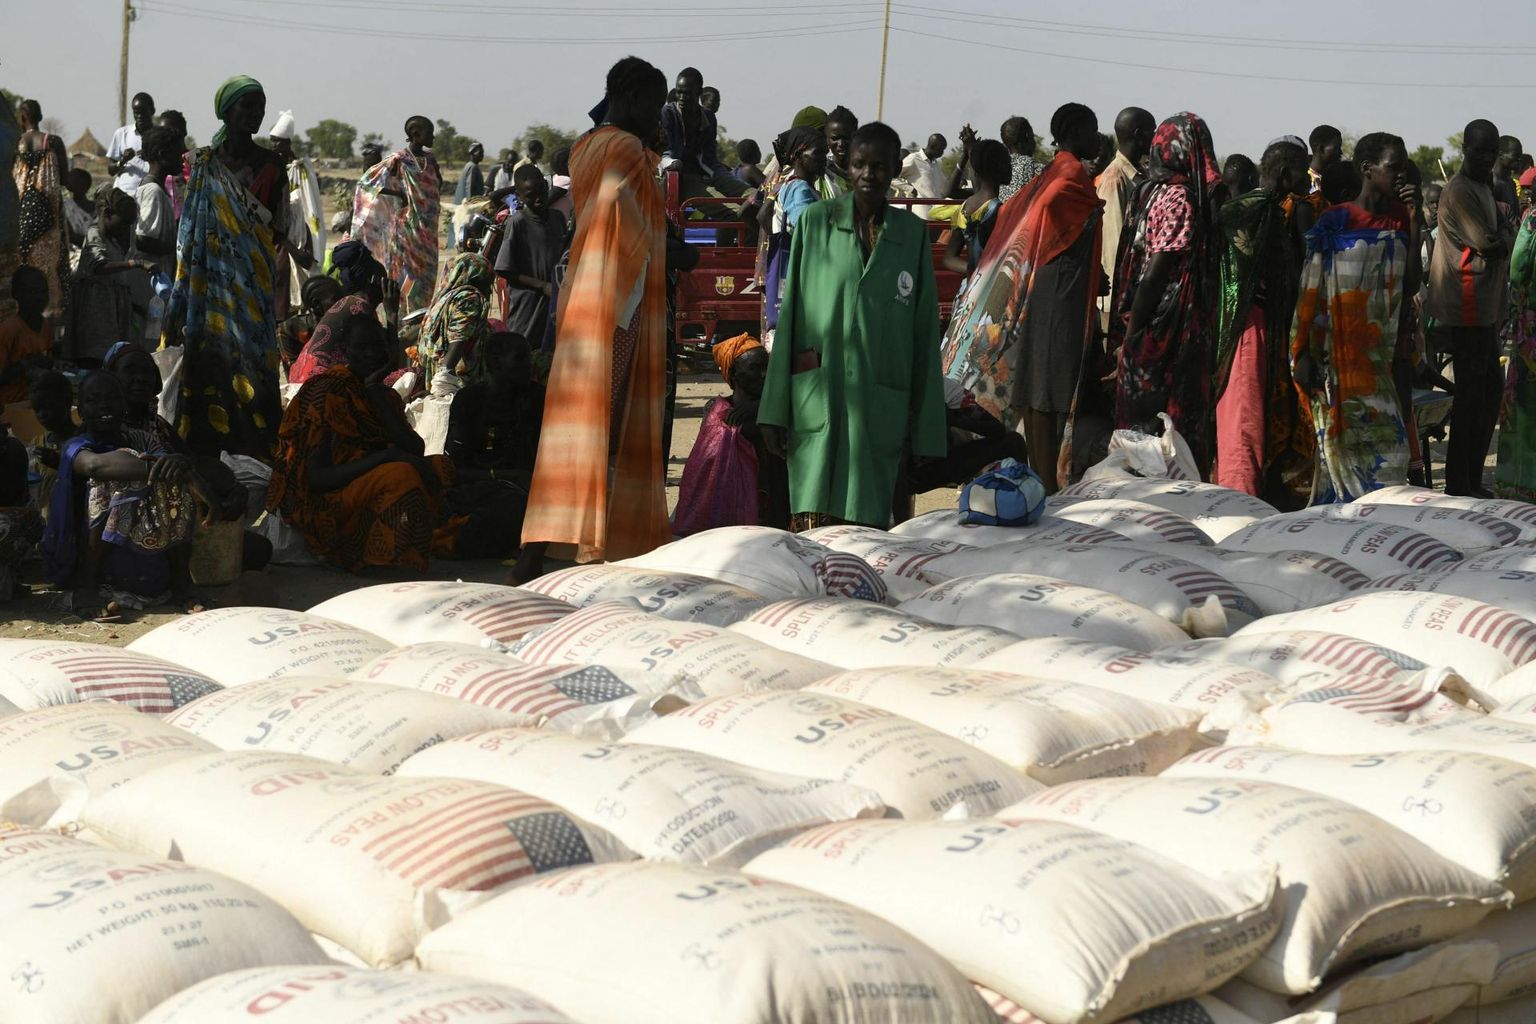 Kliimasoojenemine ei tähenda tingimata põuda. Lõuna-Sudaanis on neli aastat järjest olnud suured üleujutused, mis on kaasa toonud humanitaarkriisi.